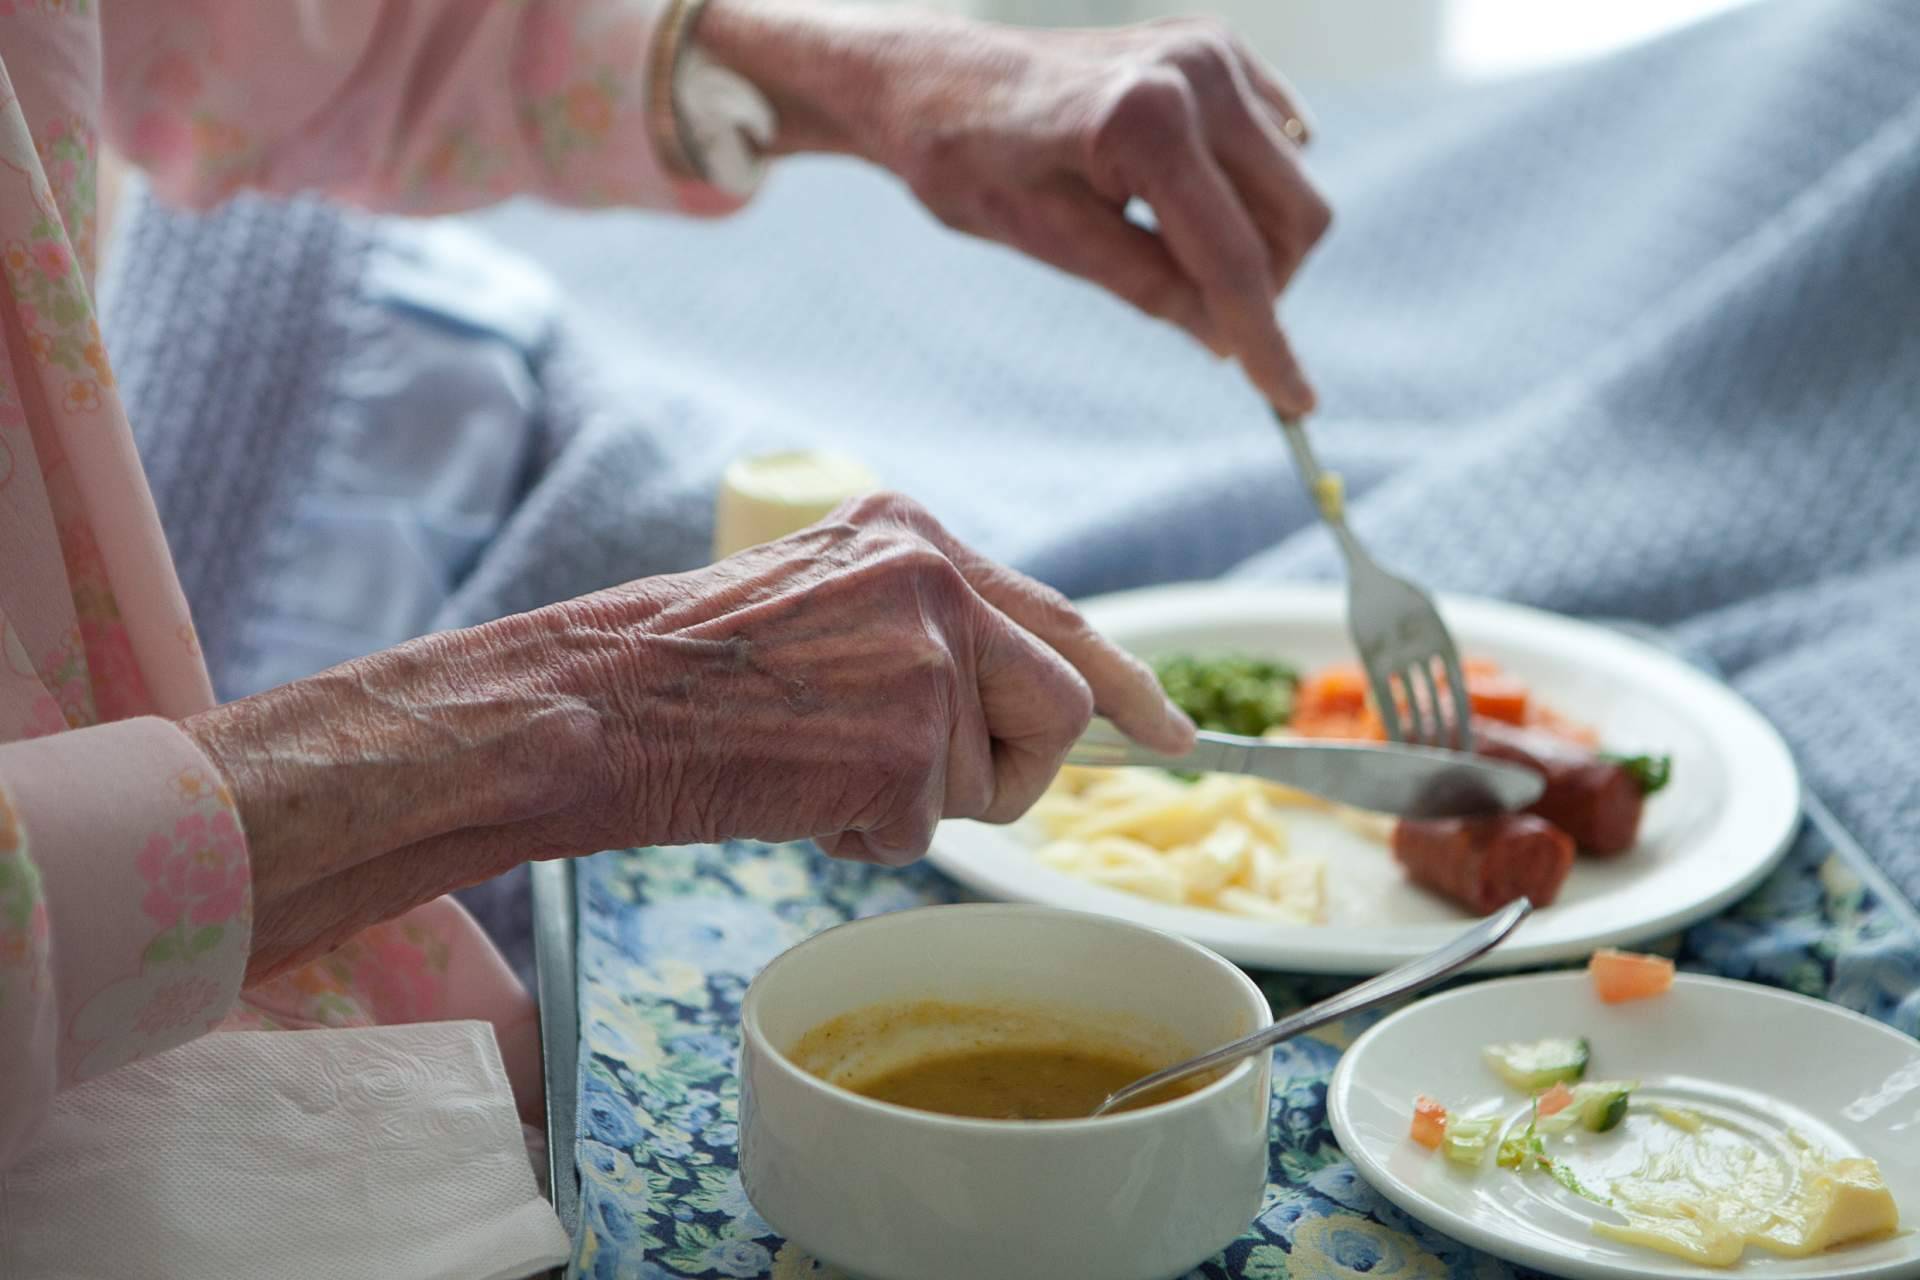 Comida casera digna para las personas mayores, la solución que presenta MiPlato